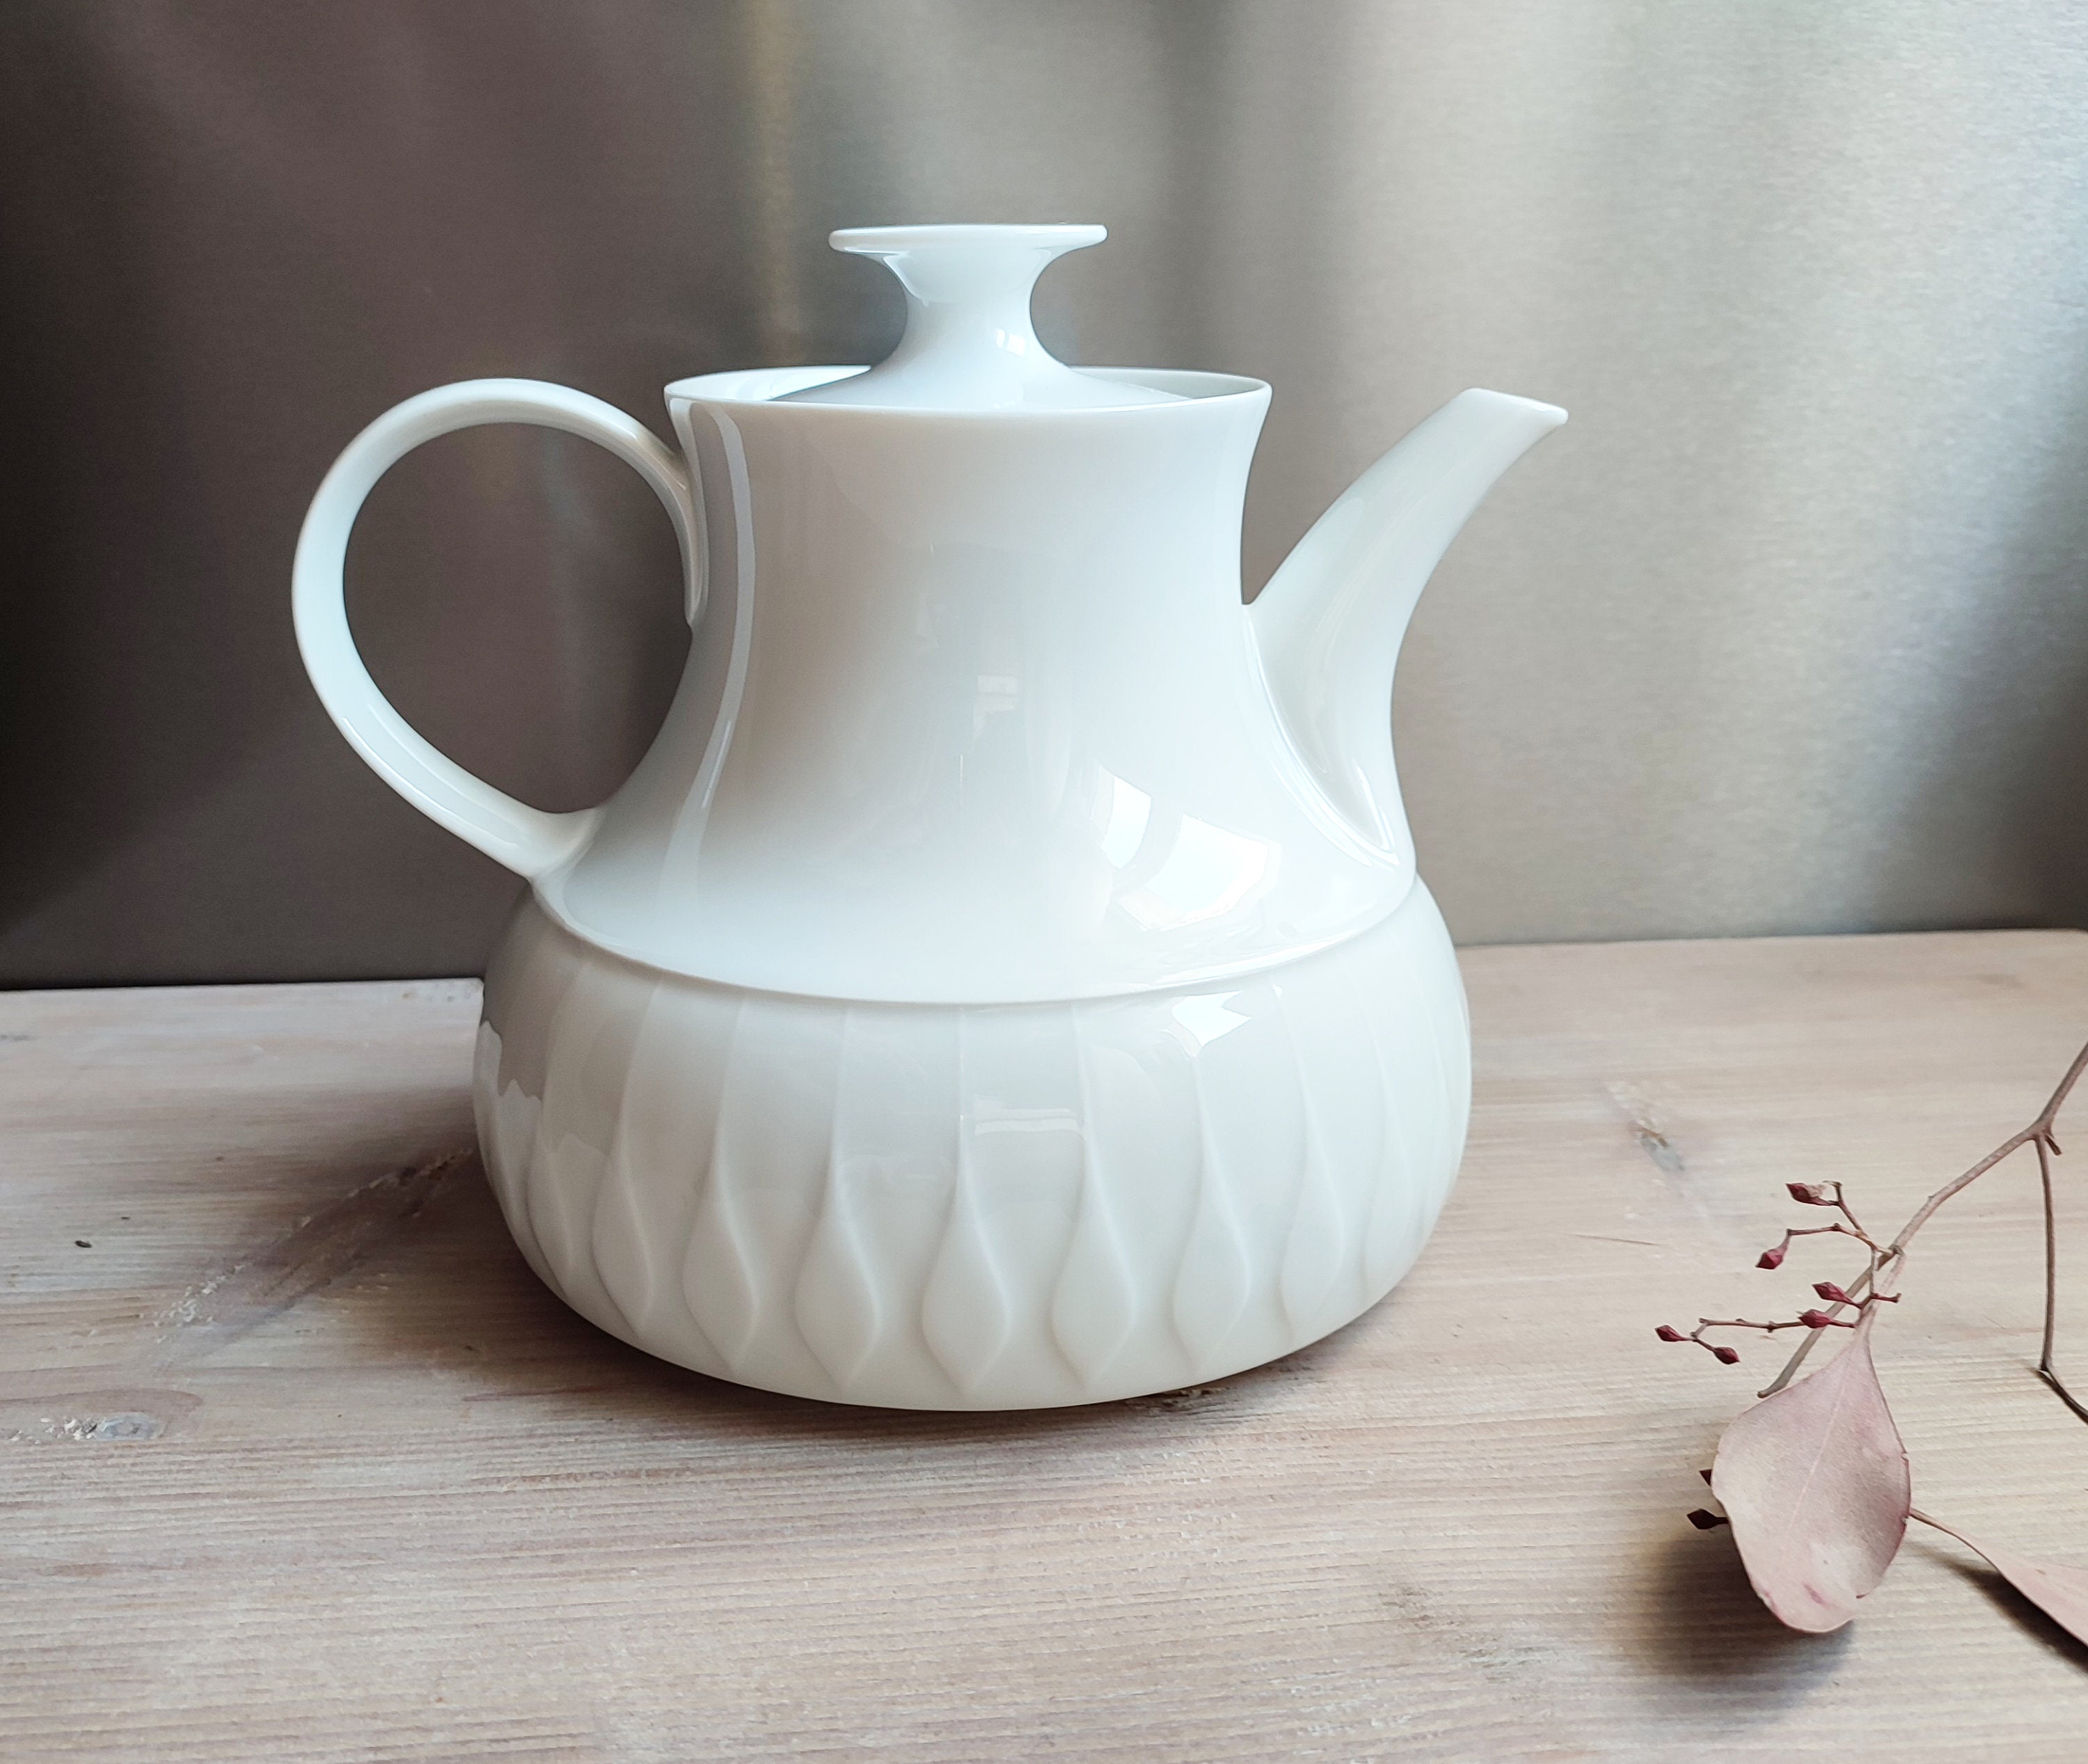 2 - Teapot Etsy Liter